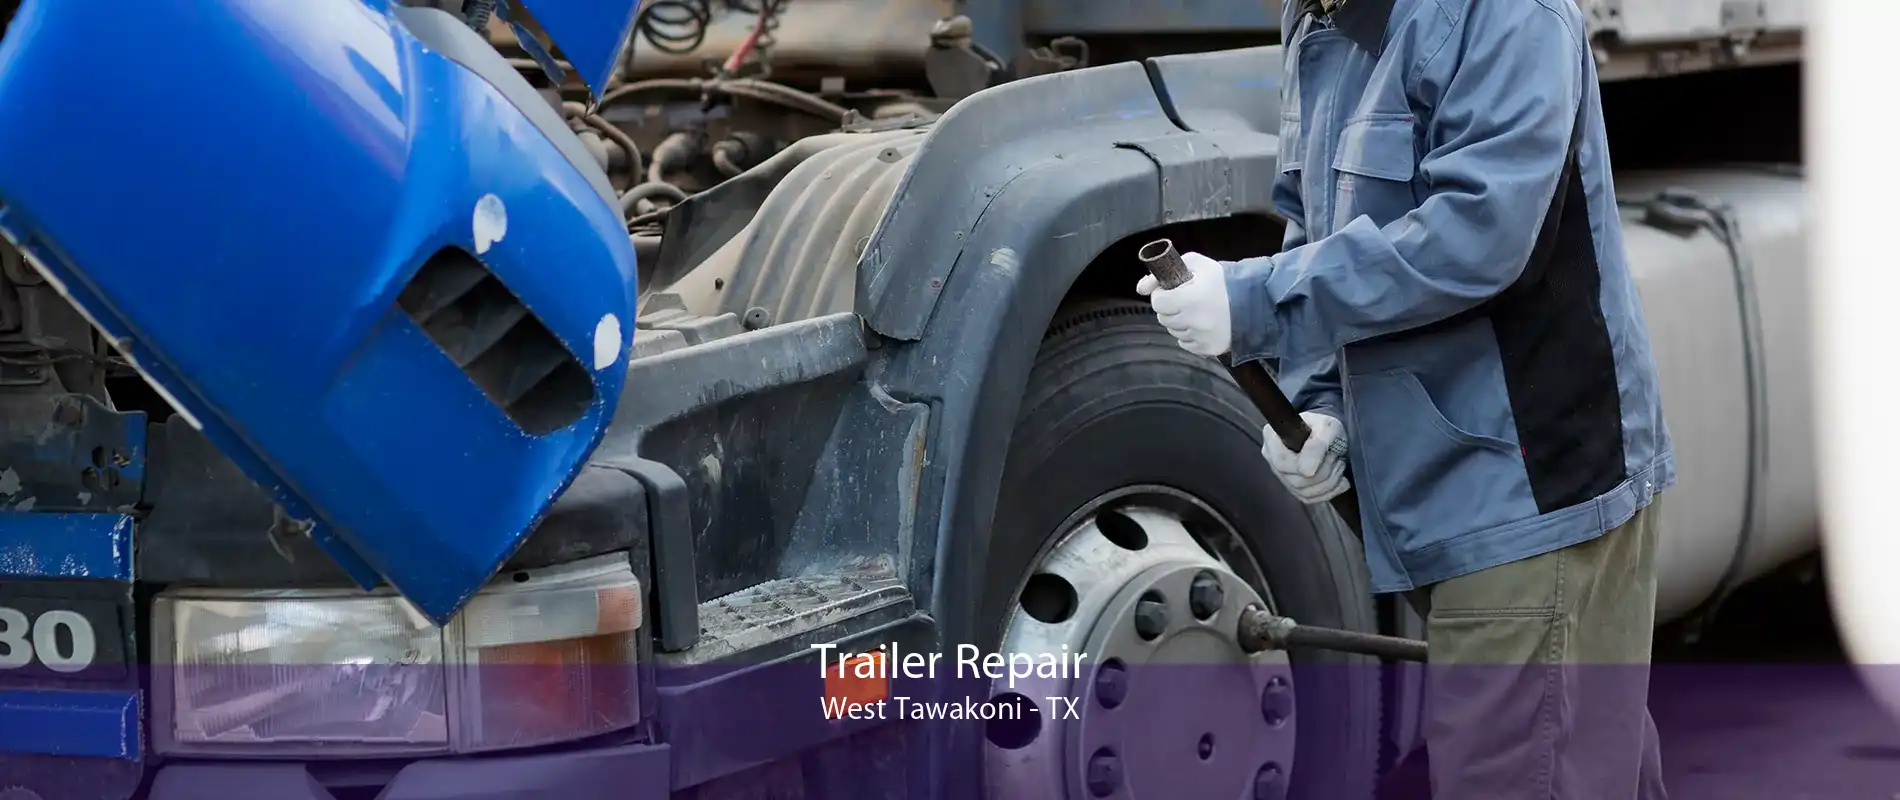 Trailer Repair West Tawakoni - TX